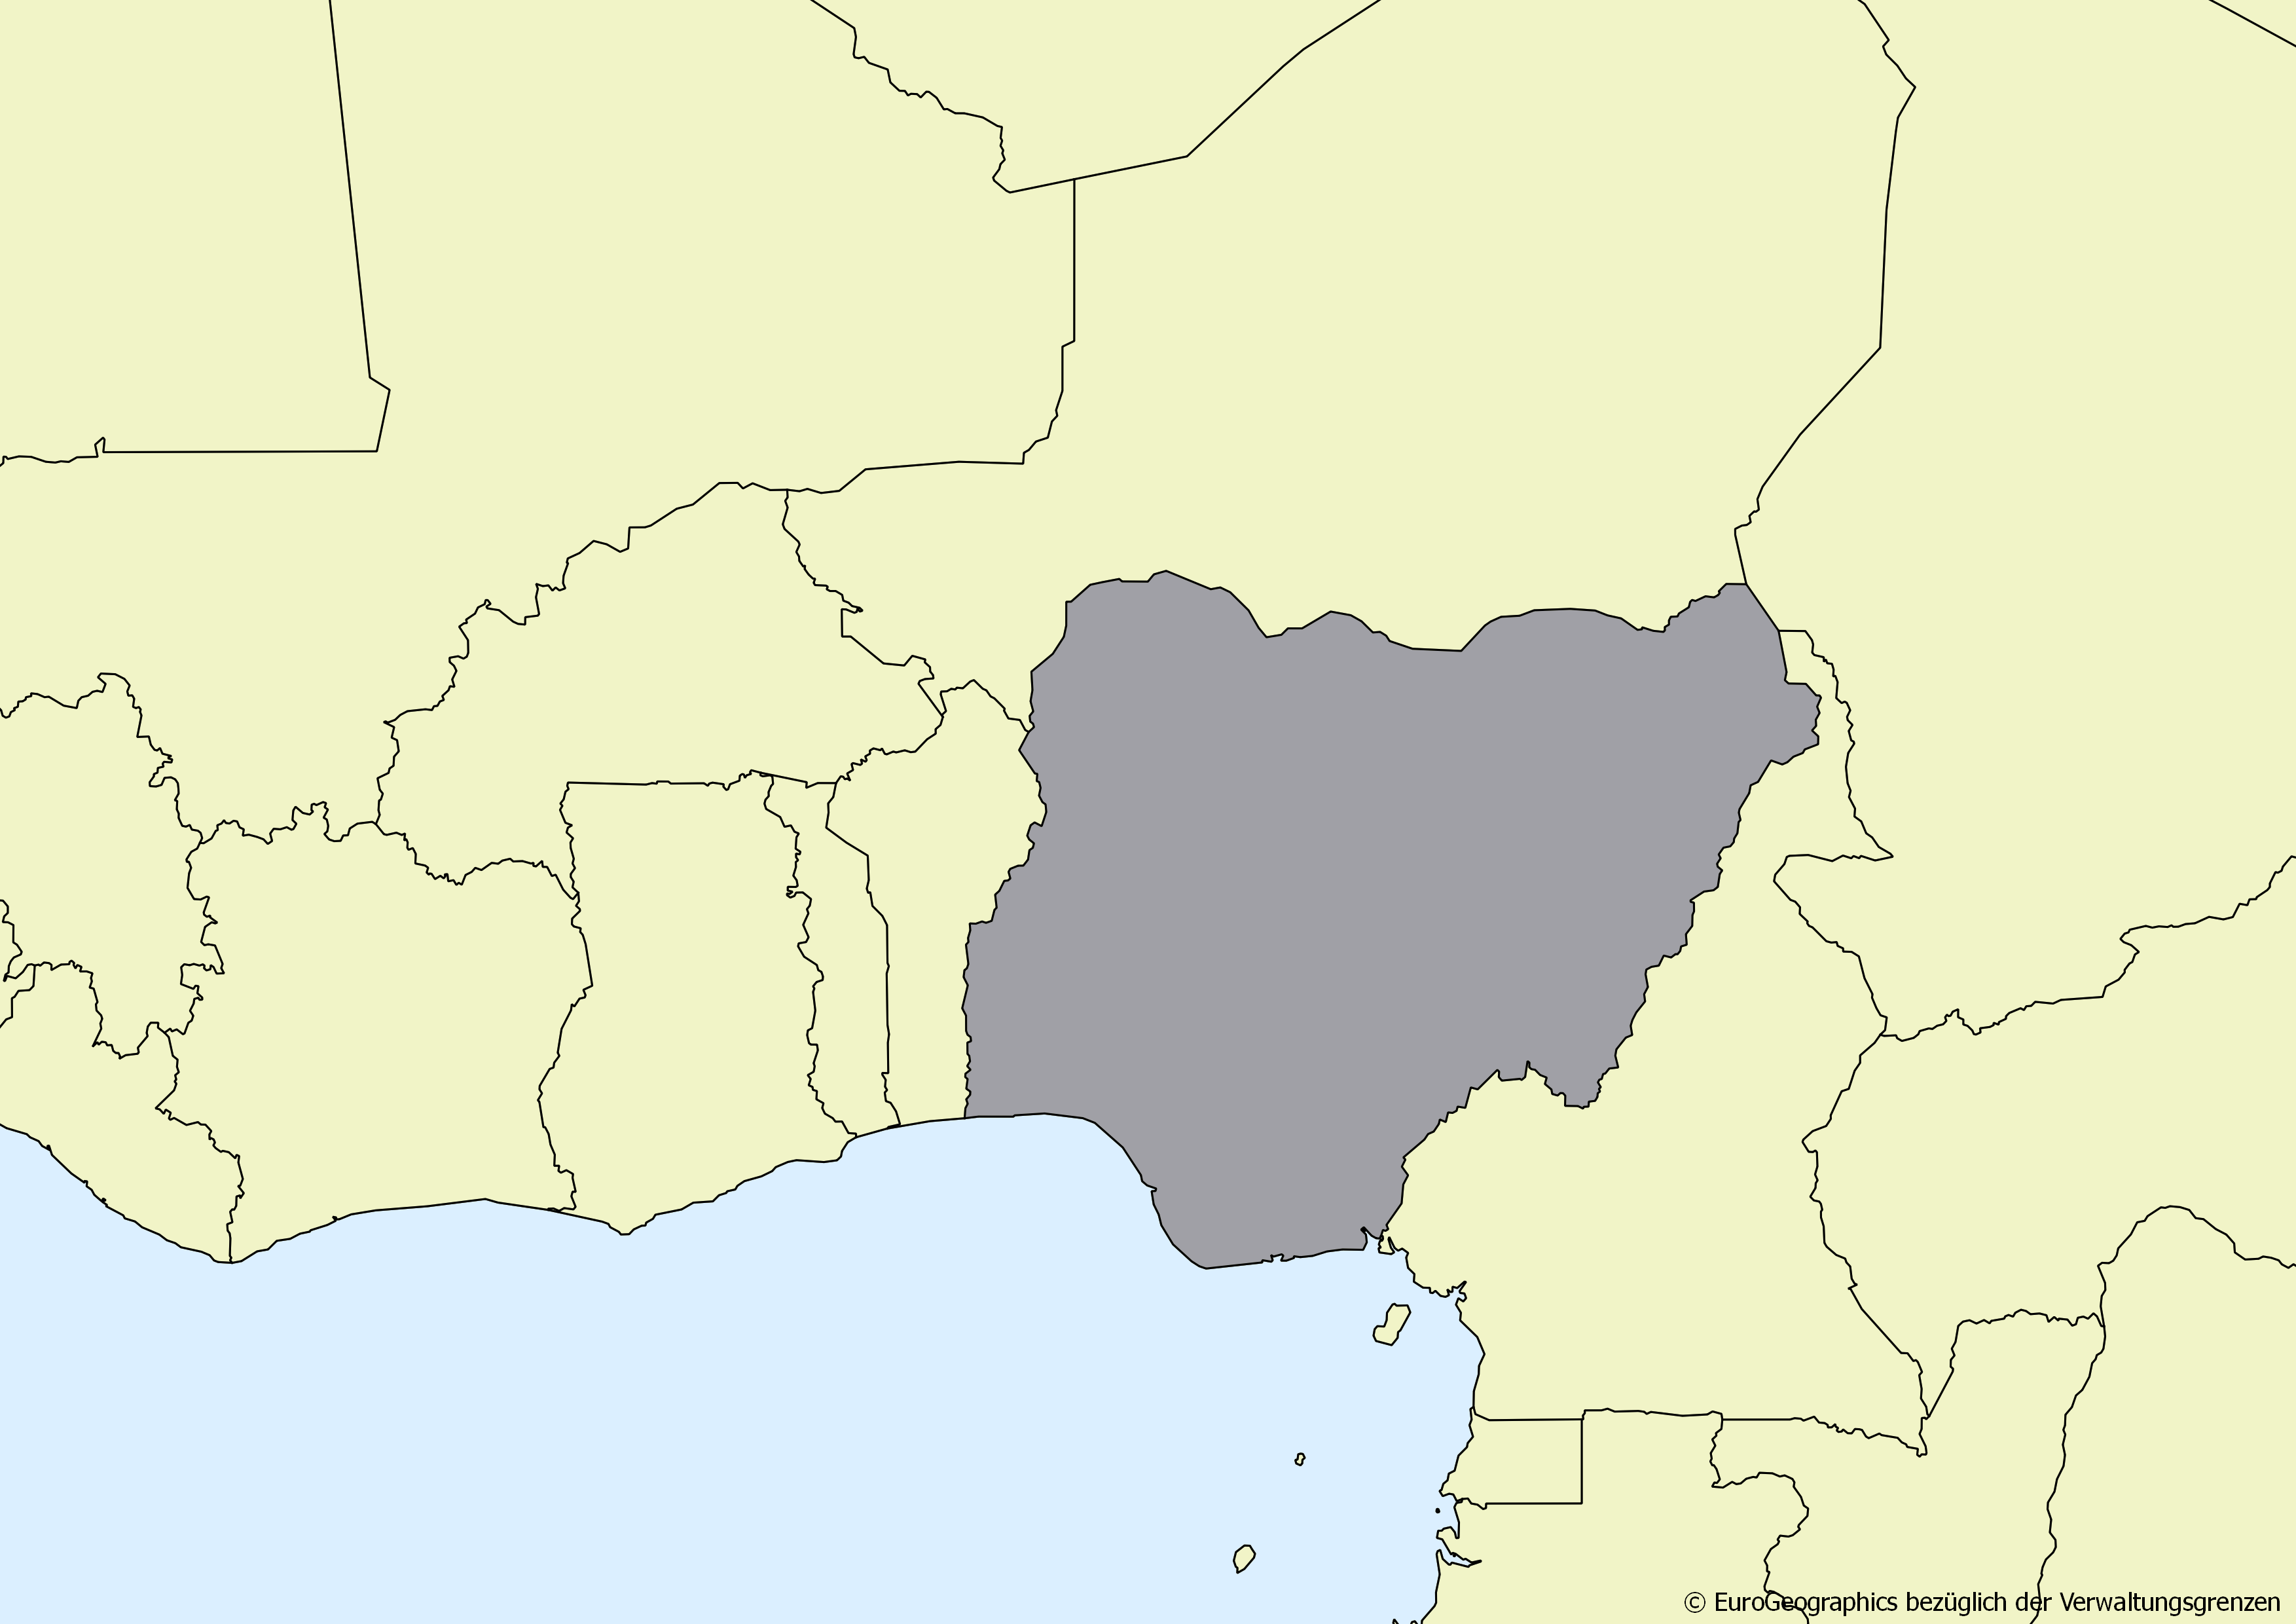 Ausschnitt einer Karte des afrikanischen Kontinents mit Ländergrenzen. Im Zentrum steht Nigeria grau hervorgehoben